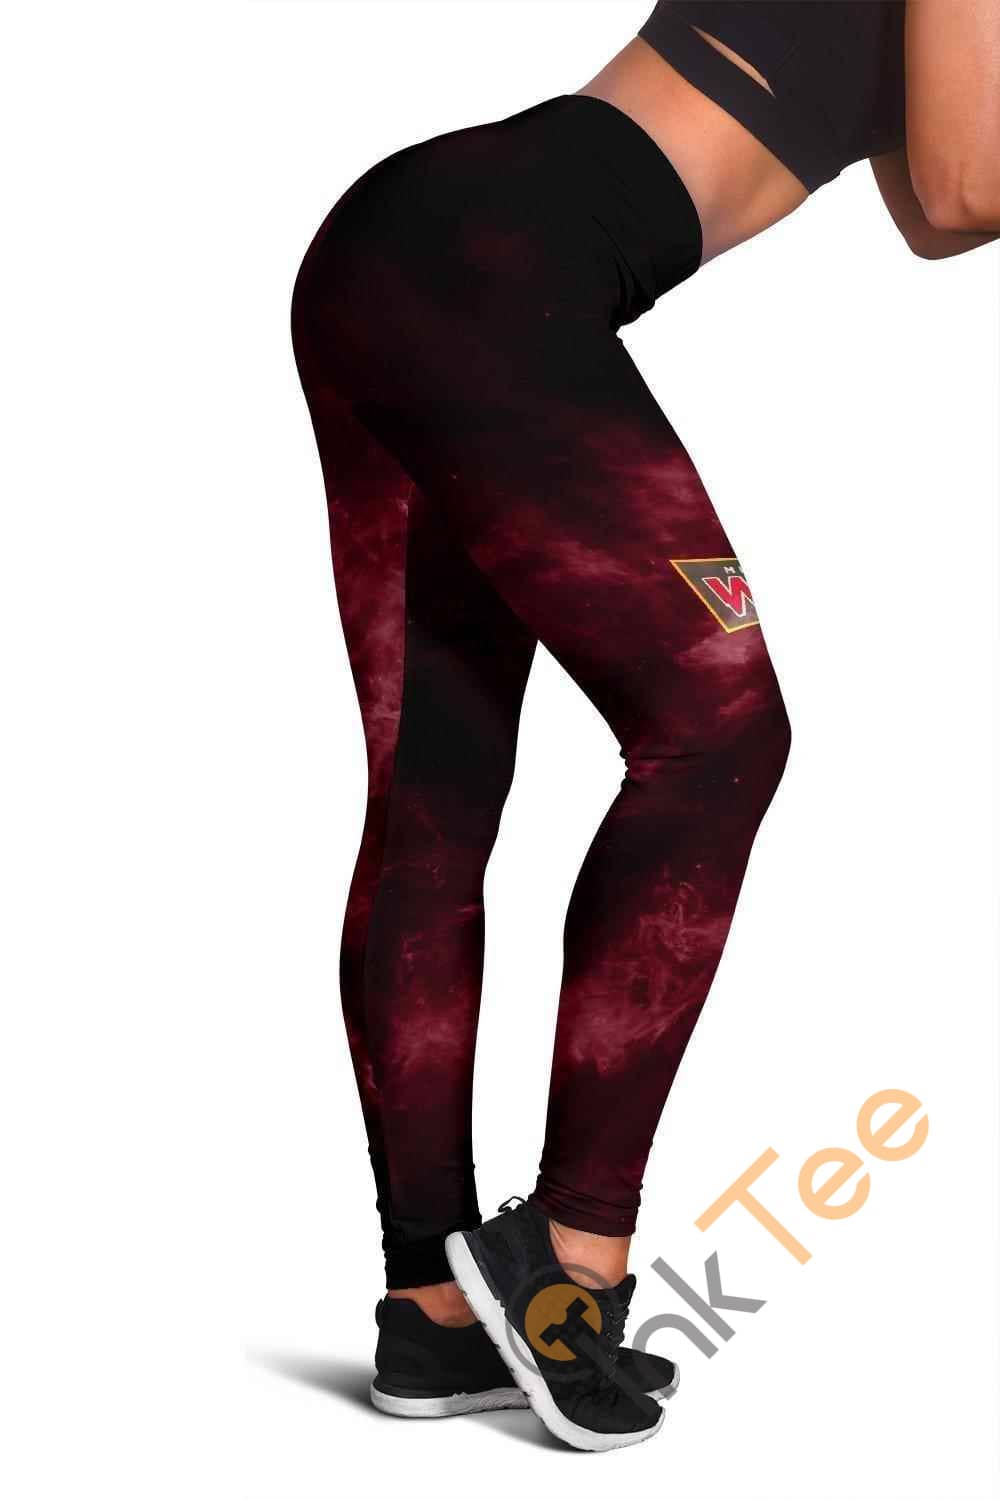 Inktee Store - Minnesota Wild 3D All Over Print For Yoga Fitness Women'S Leggings Image